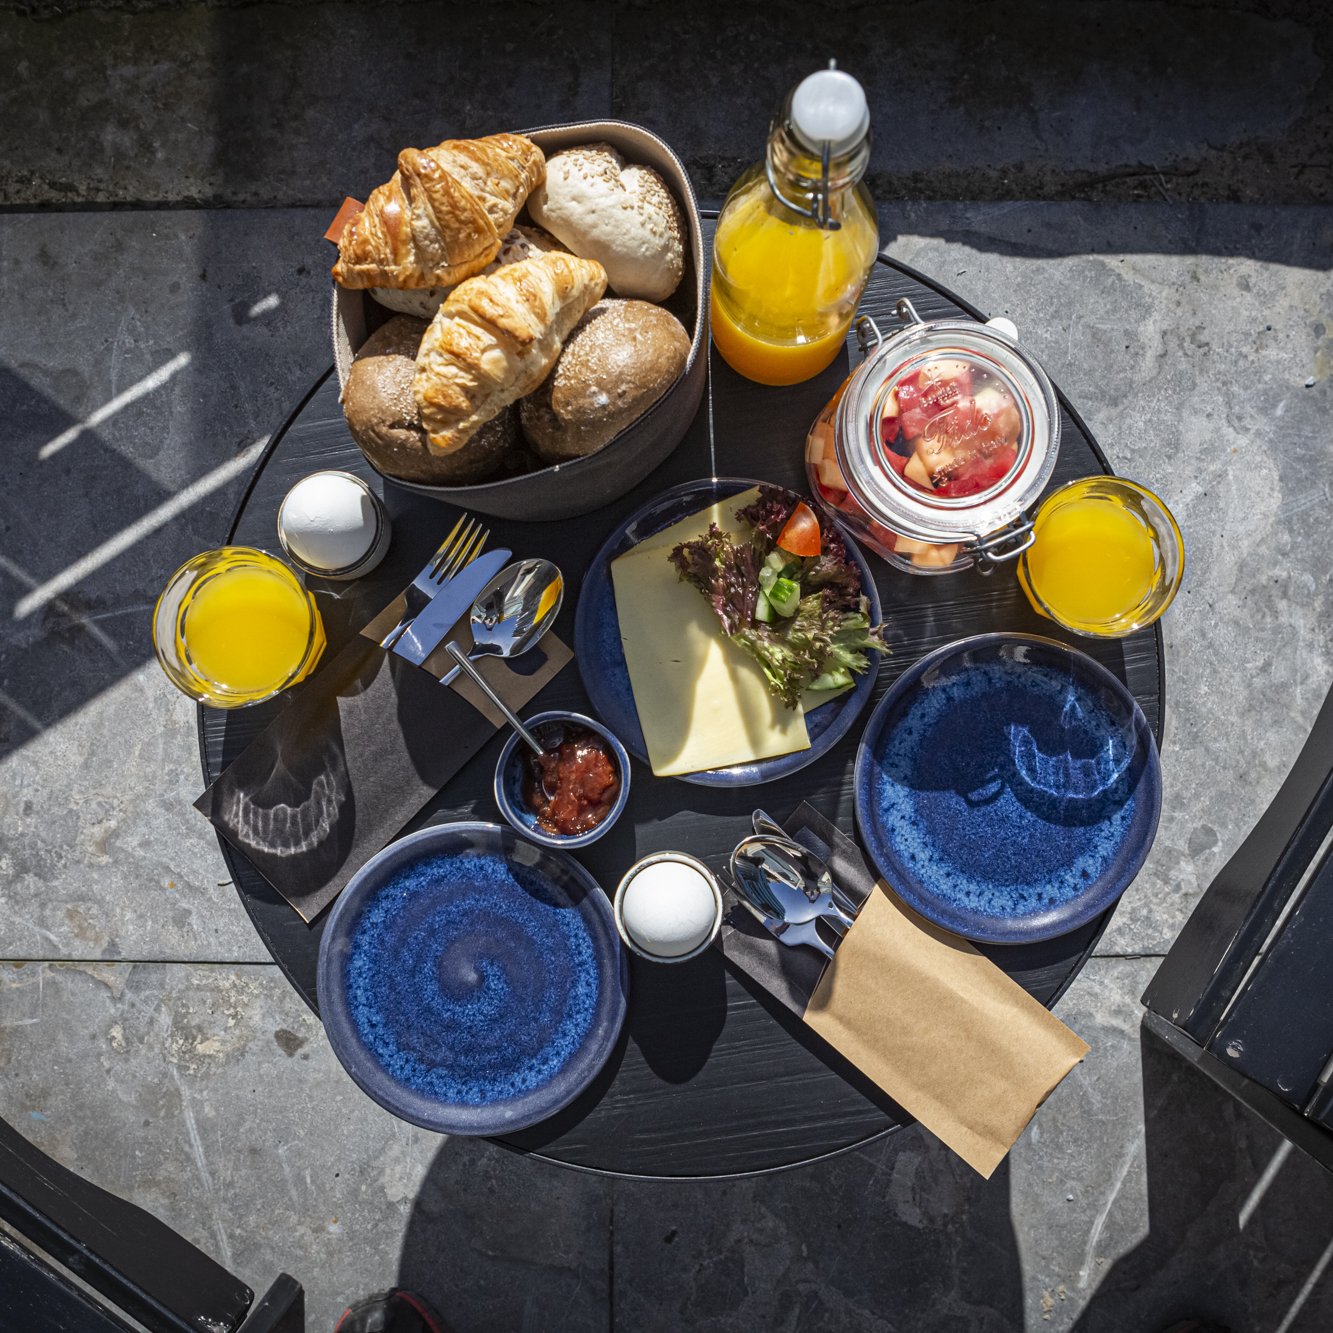 Strandhotel-Camperduin-twopers-duinkamer-terrace-breakfast-w2.jpg